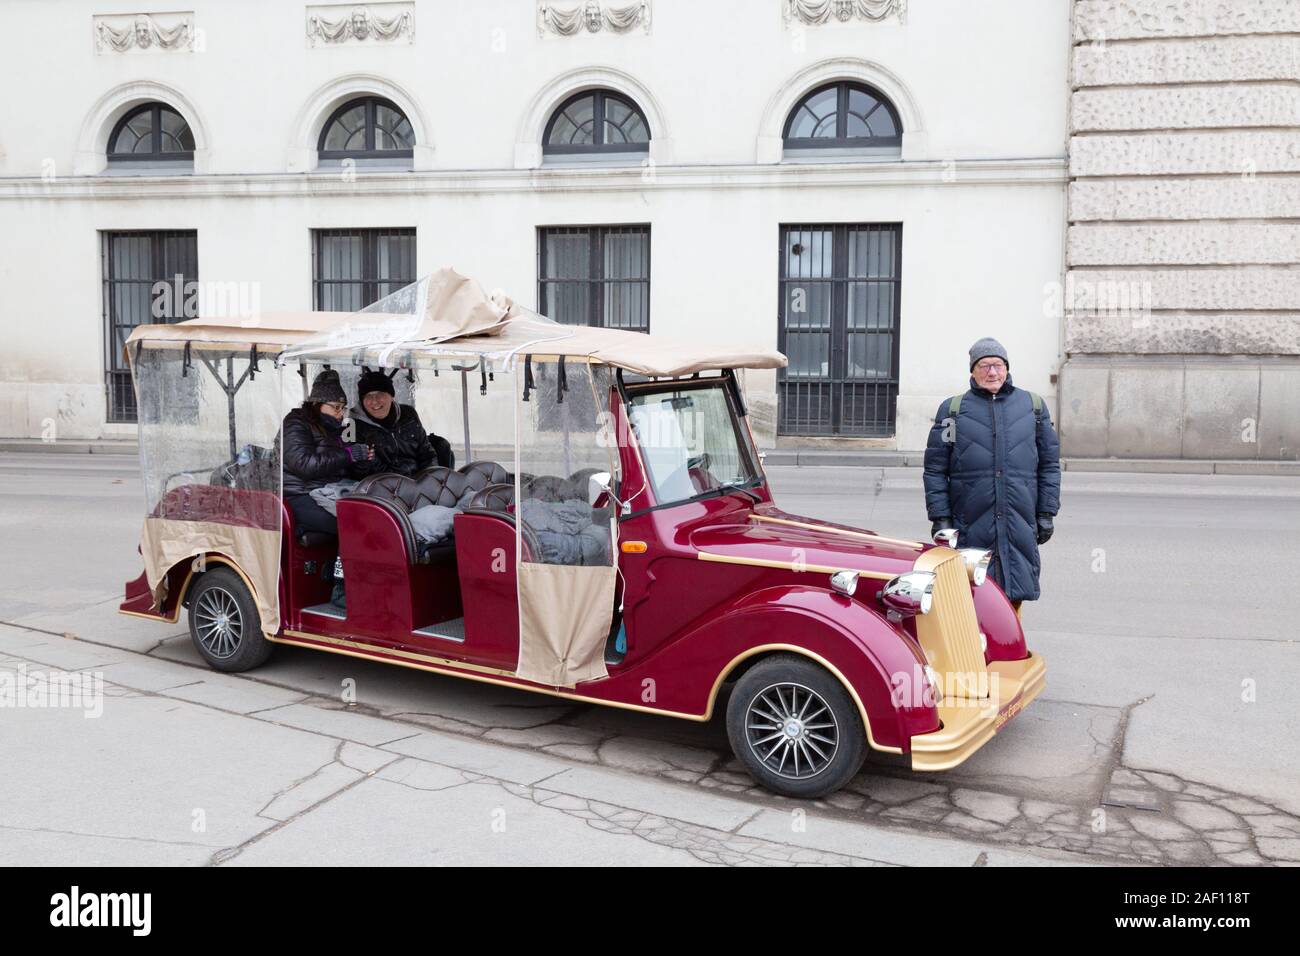 Tour de voiture de Vienne - UN chauffeur et des touristes qui vont une reproduction de voitures d'époque pour les touristes autour de la ville, Vienne Autriche Europe Banque D'Images